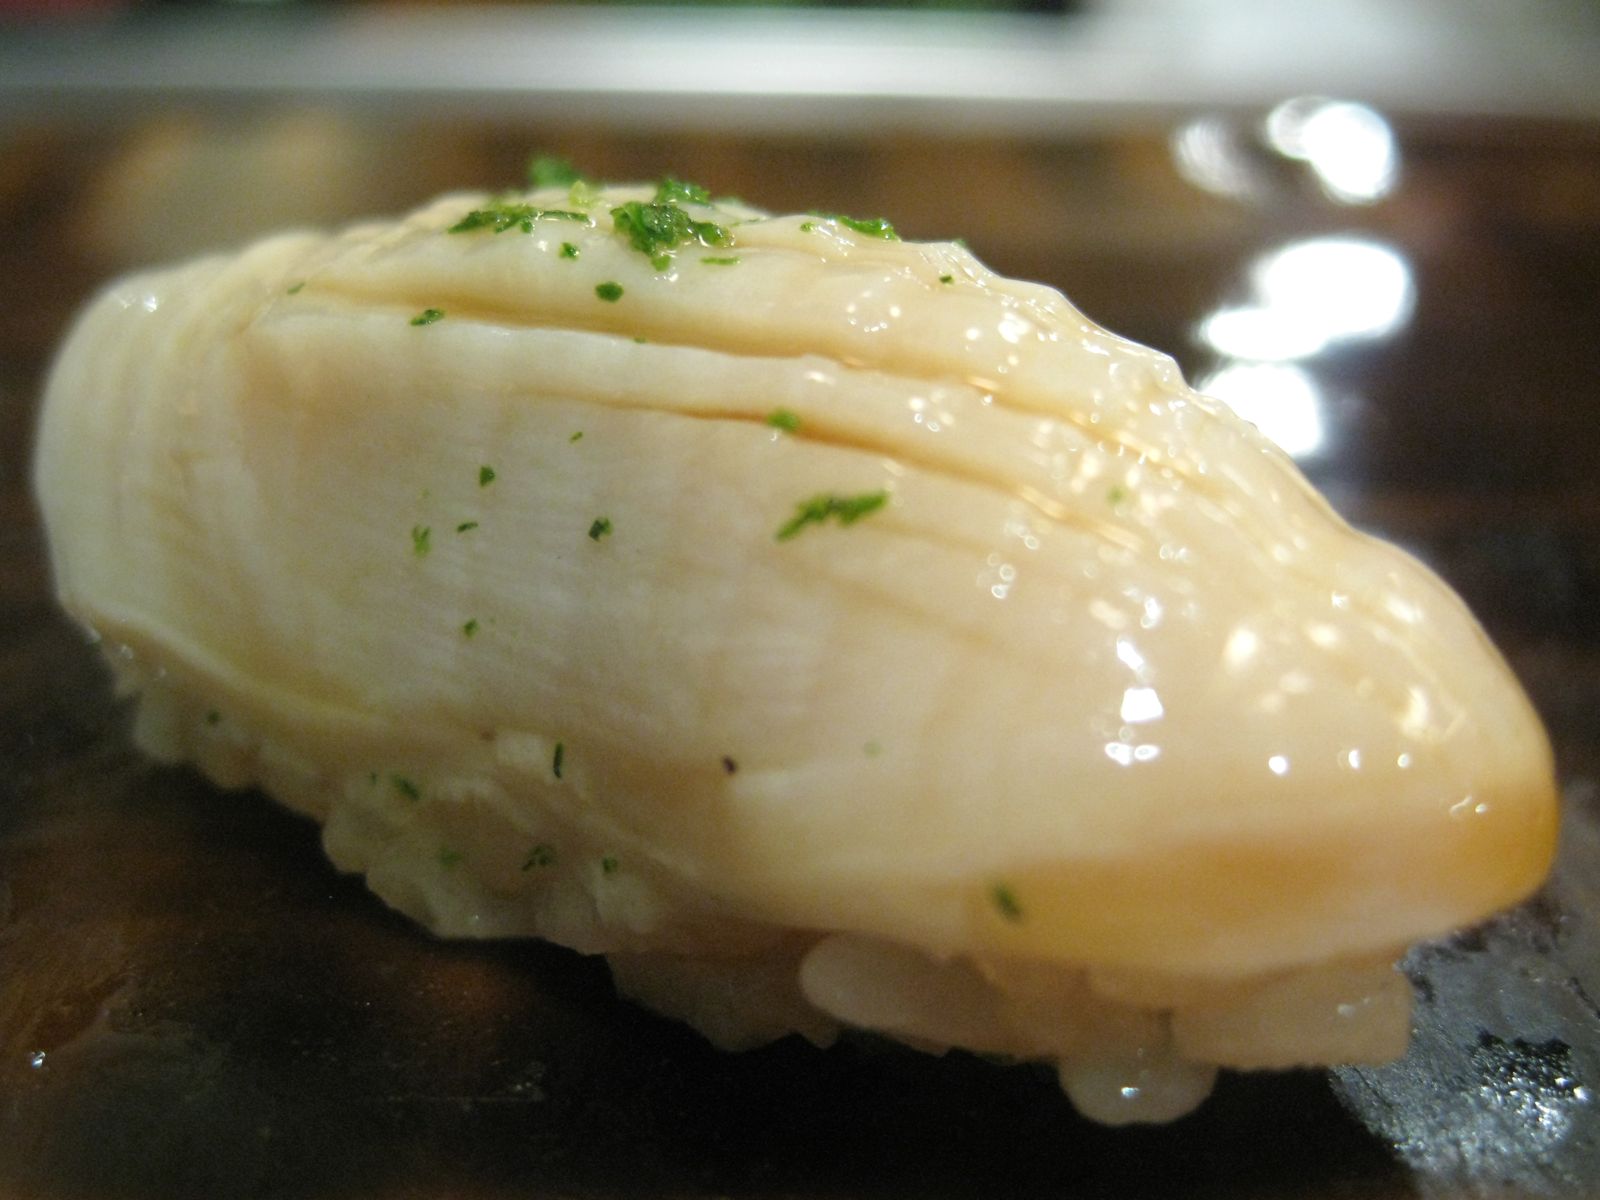 Chiba abalone